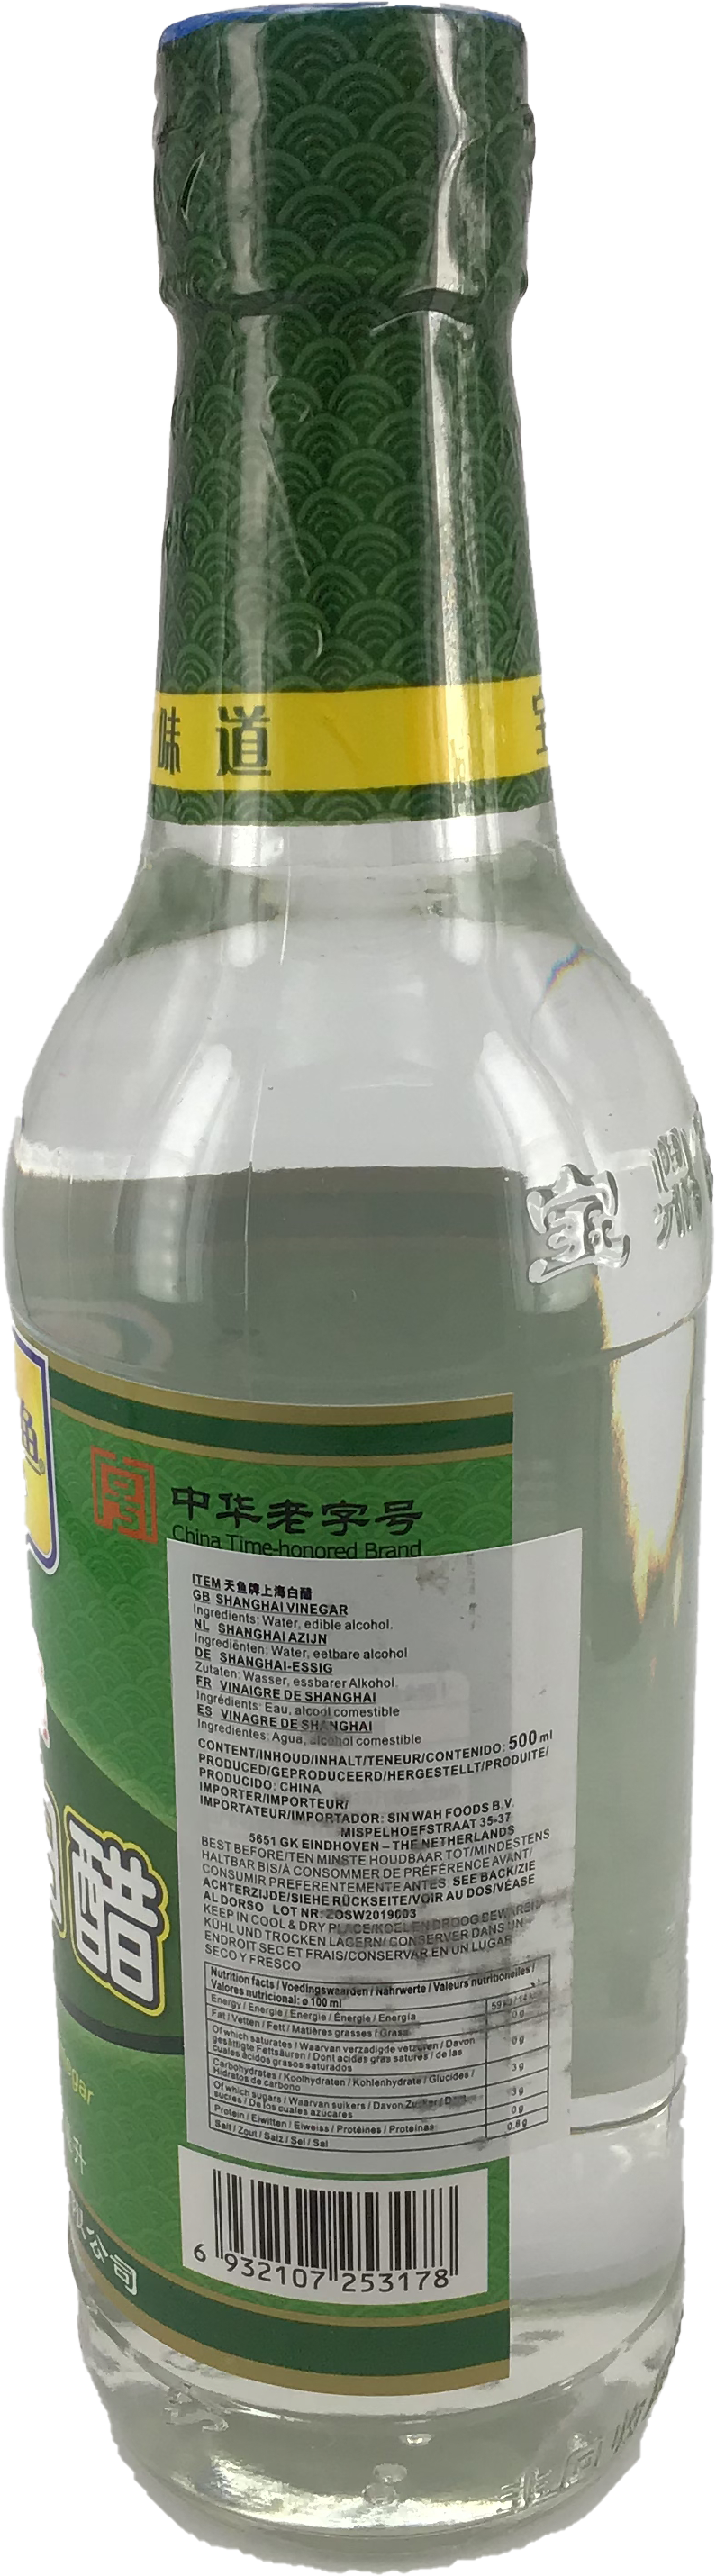 宝鼎天鱼 上海白醋/Beauideal Shanghai Weißer Essig 500ml